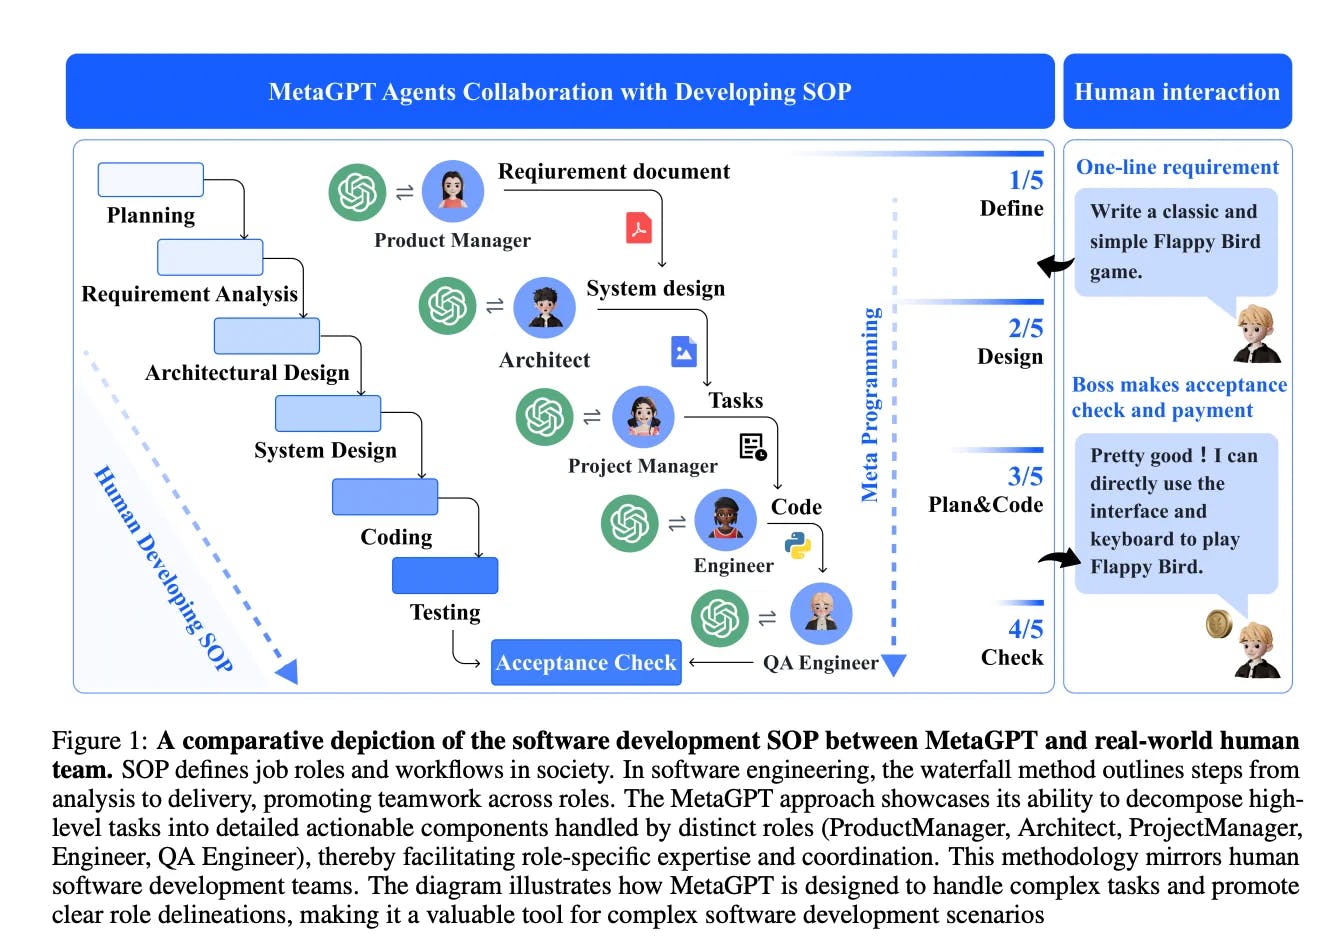 MetaGPTの革命的な世界に飛び込み、マルチエージェントシステムの景観を再定義するフレームワークについて学びましょう。SOP（標準オペレーティングプロシージャ）およびLLM（言語学習モデル）を活用して人間のようなワークフローを模倣し、人工一般知能への新しい道を開く方法についてご紹介します。